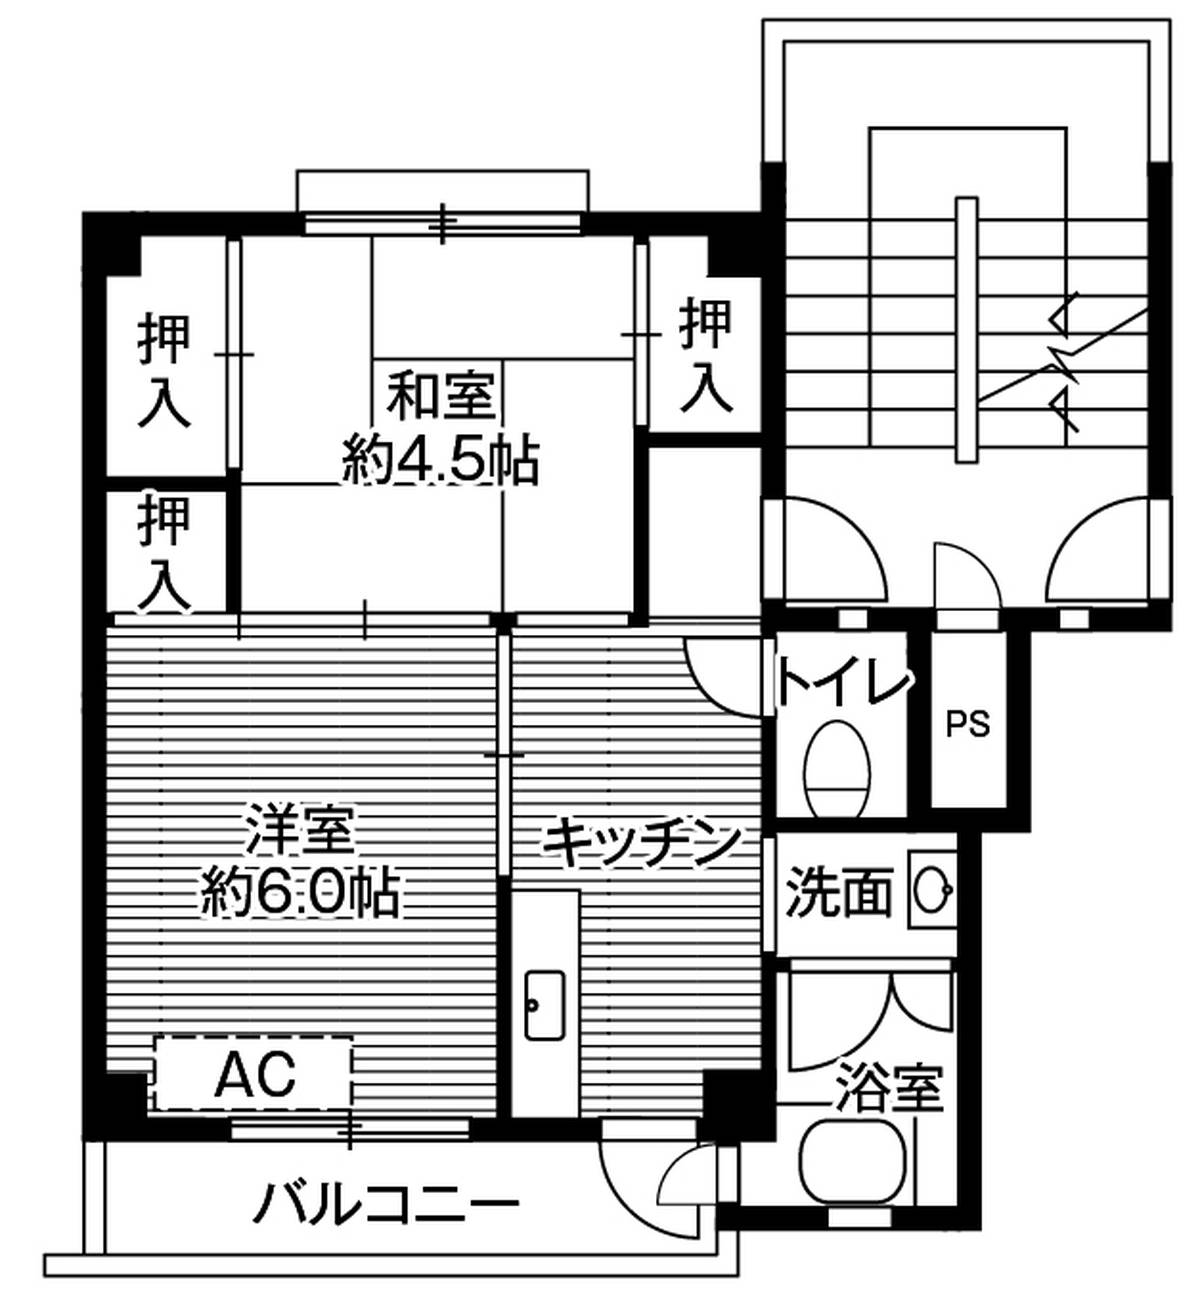 Sơ đồ phòng 2K của Village House Ooshima ở Hiratsuka-shi